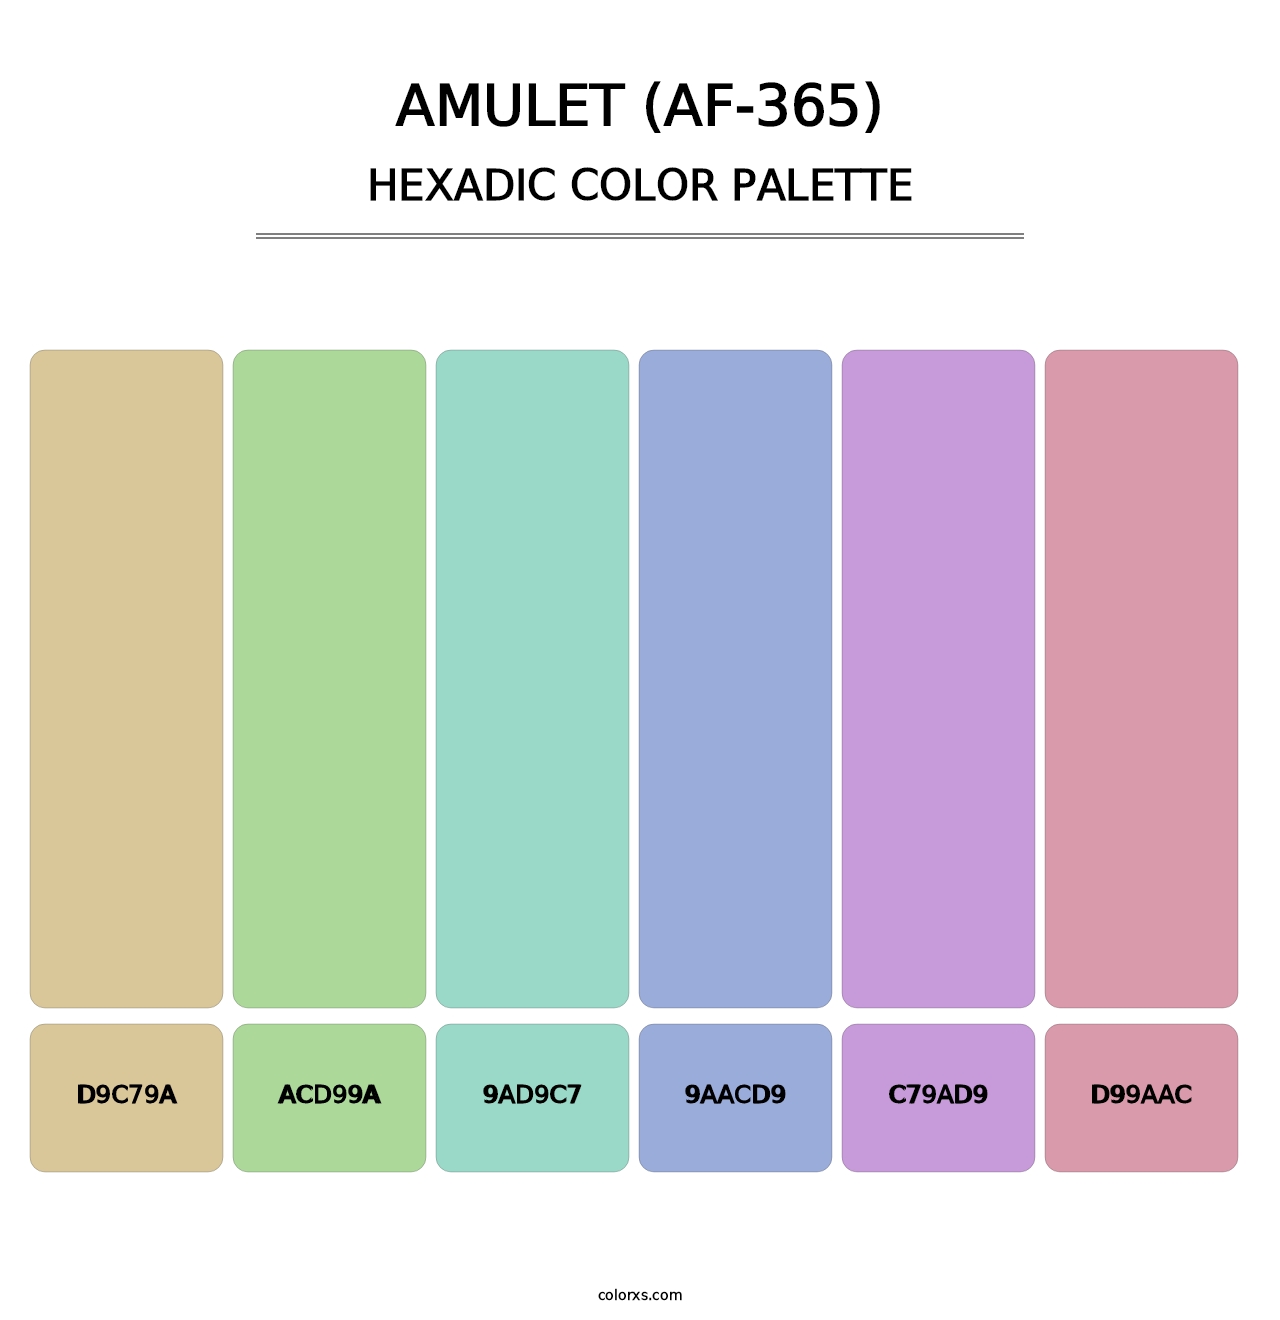 Amulet (AF-365) - Hexadic Color Palette